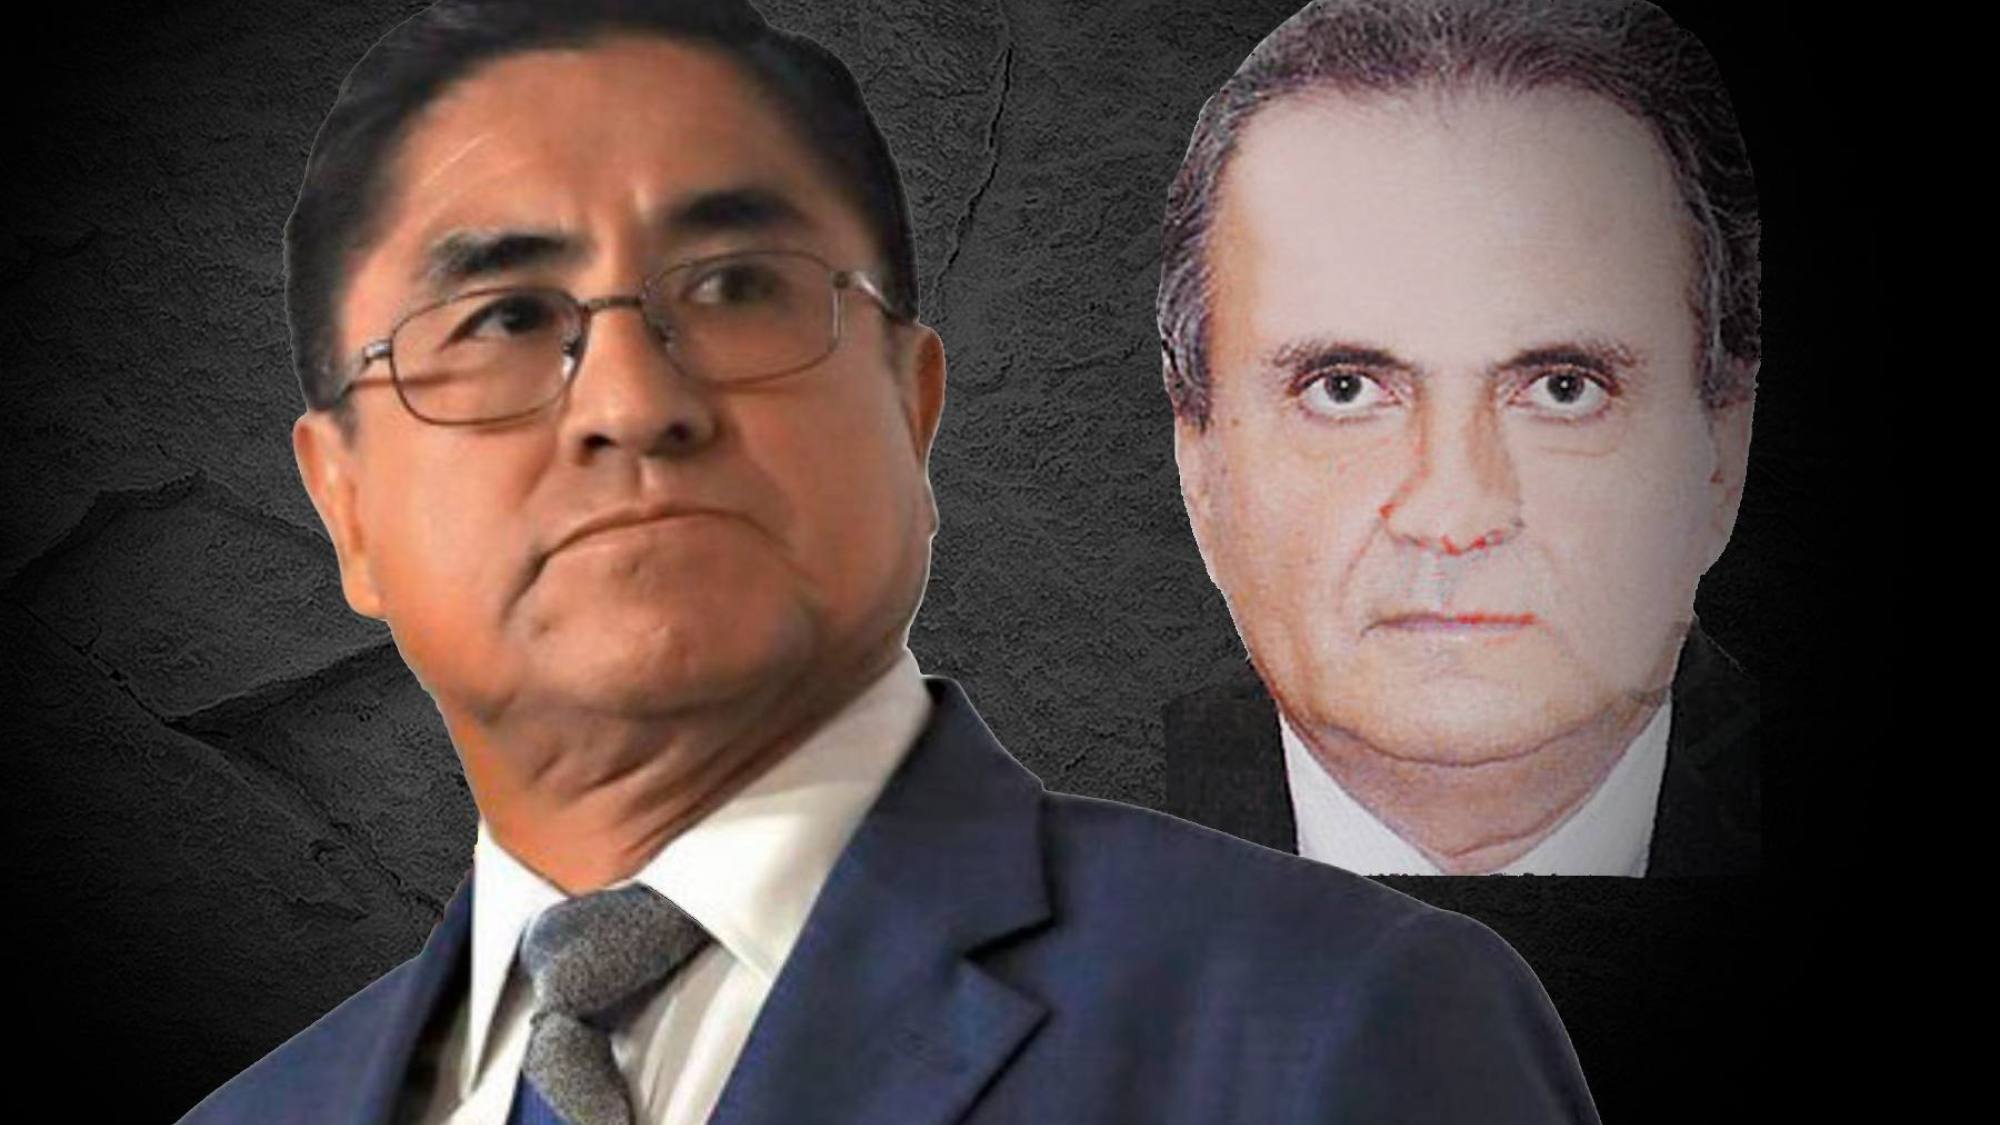 Empresario Ricci confiesa “cortesías” a Hinostroza y Corte Suprema admite caso en solicitud de extradición, Epicentro TV